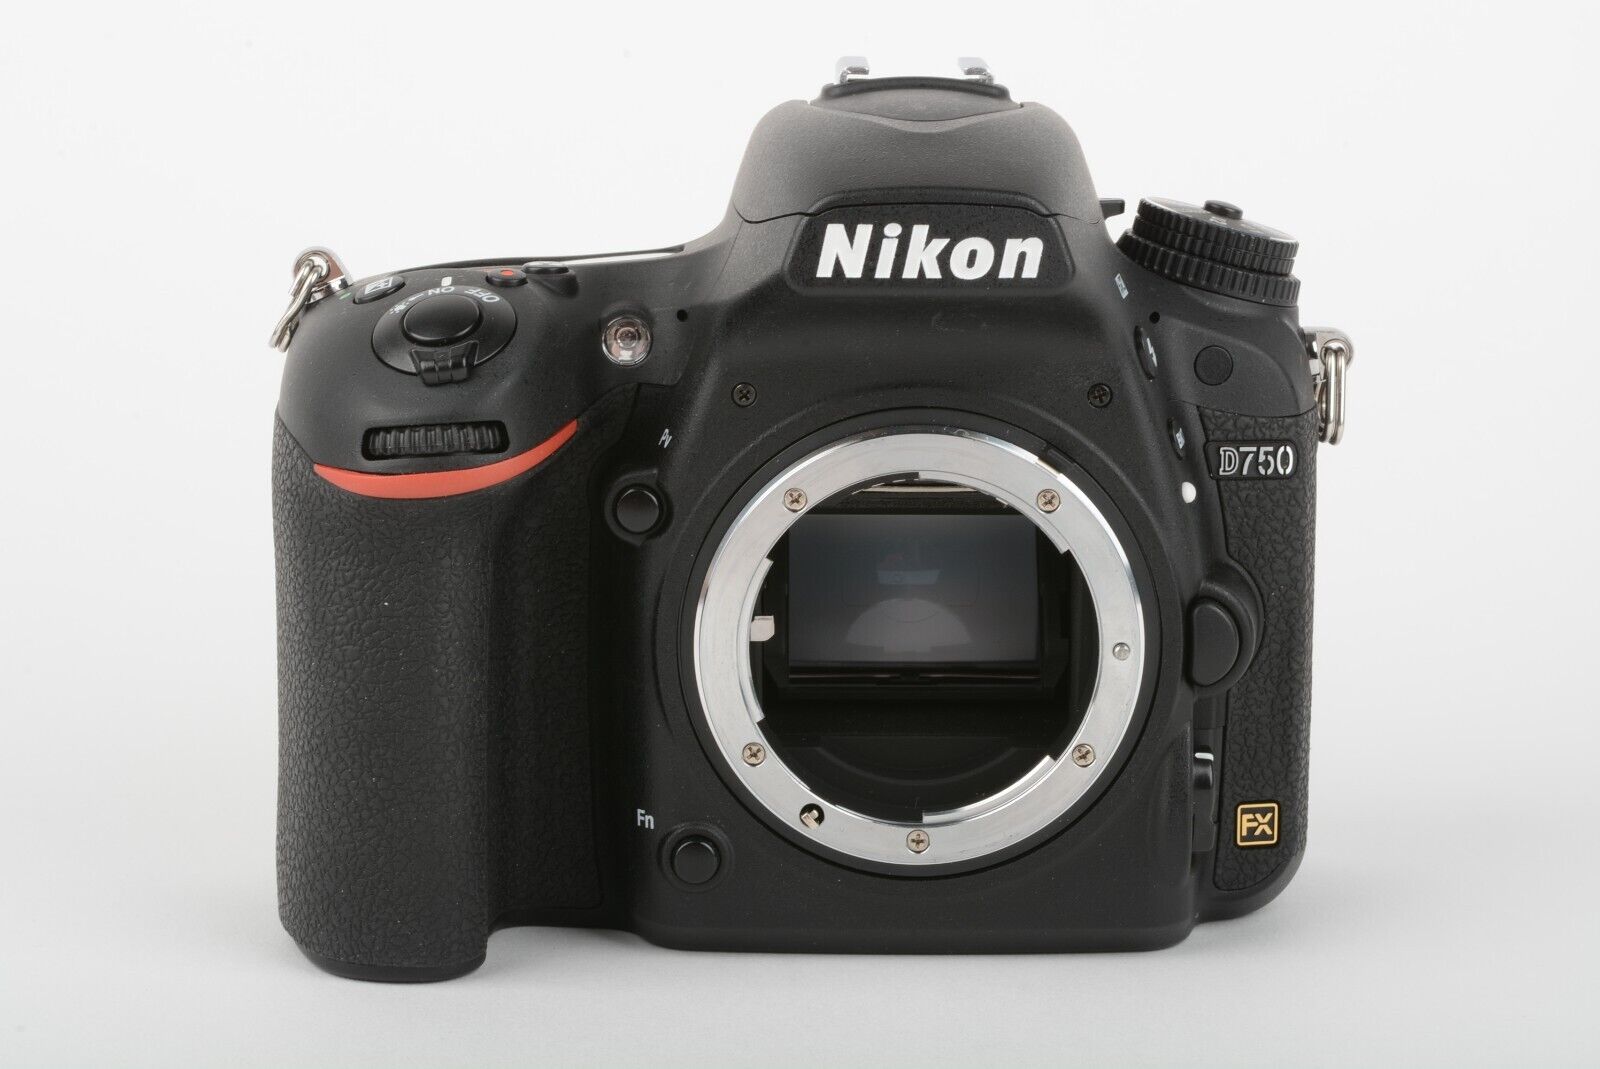 Nikon D750 DSLR Body 24.3MP, batt, charger, strap, Only 32,897